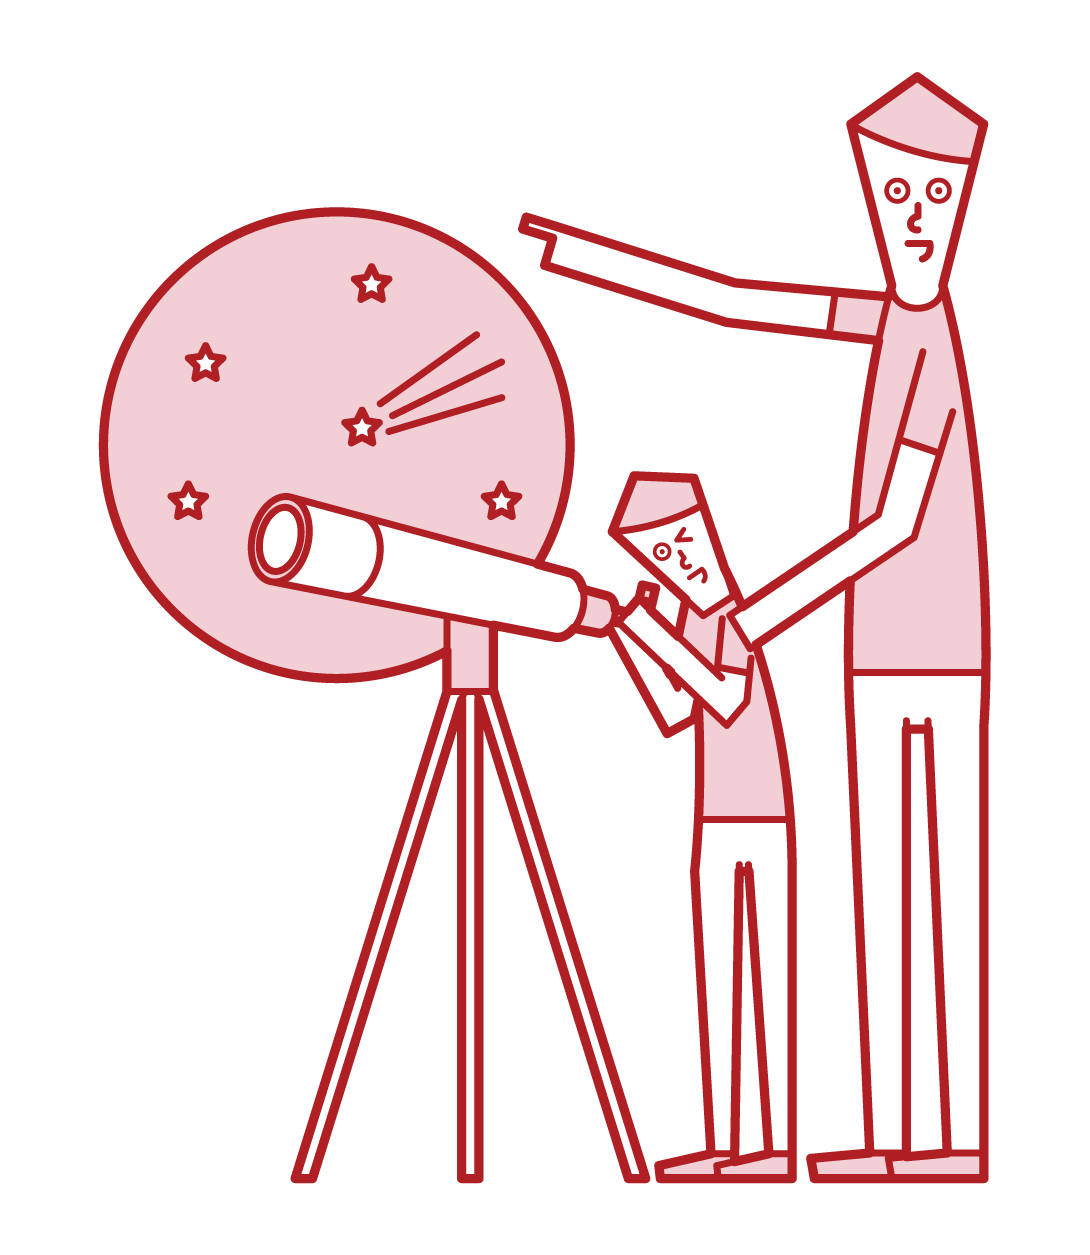 望遠鏡で星空を観察する親子のイラスト フリーイラスト素材 Kukukeke ククケケ